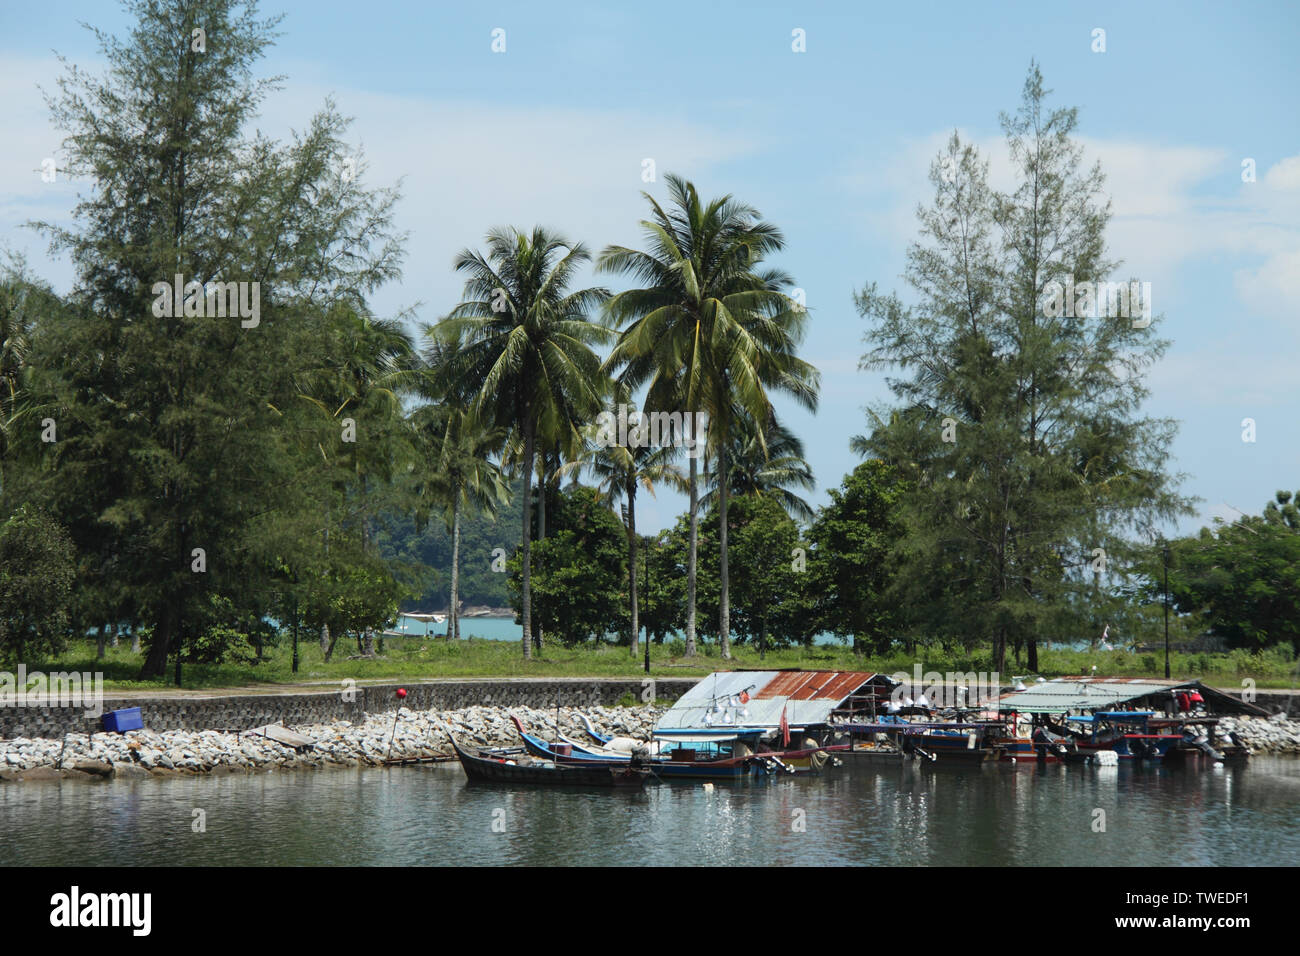 Bateaux amarrés à un quai, parc du port de Telaga, île de Langkawi, Malaisie Banque D'Images